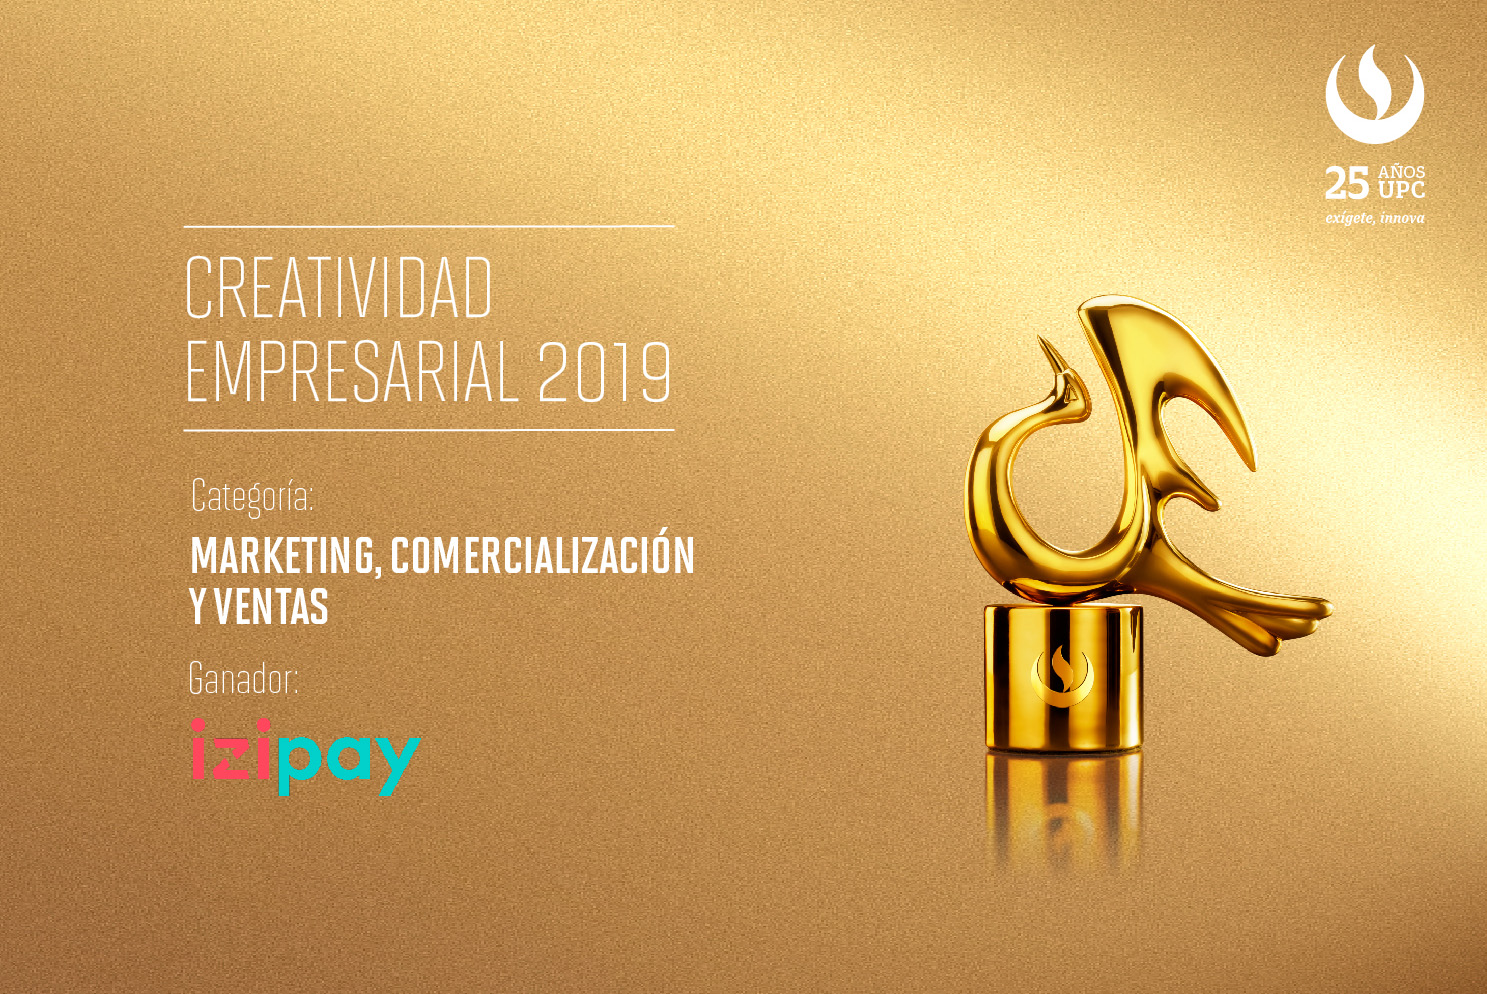 Creatividad Empresarial 2019: IZIPAY fue reconocido en la categoría Marketing, Comercialización y Ventas   